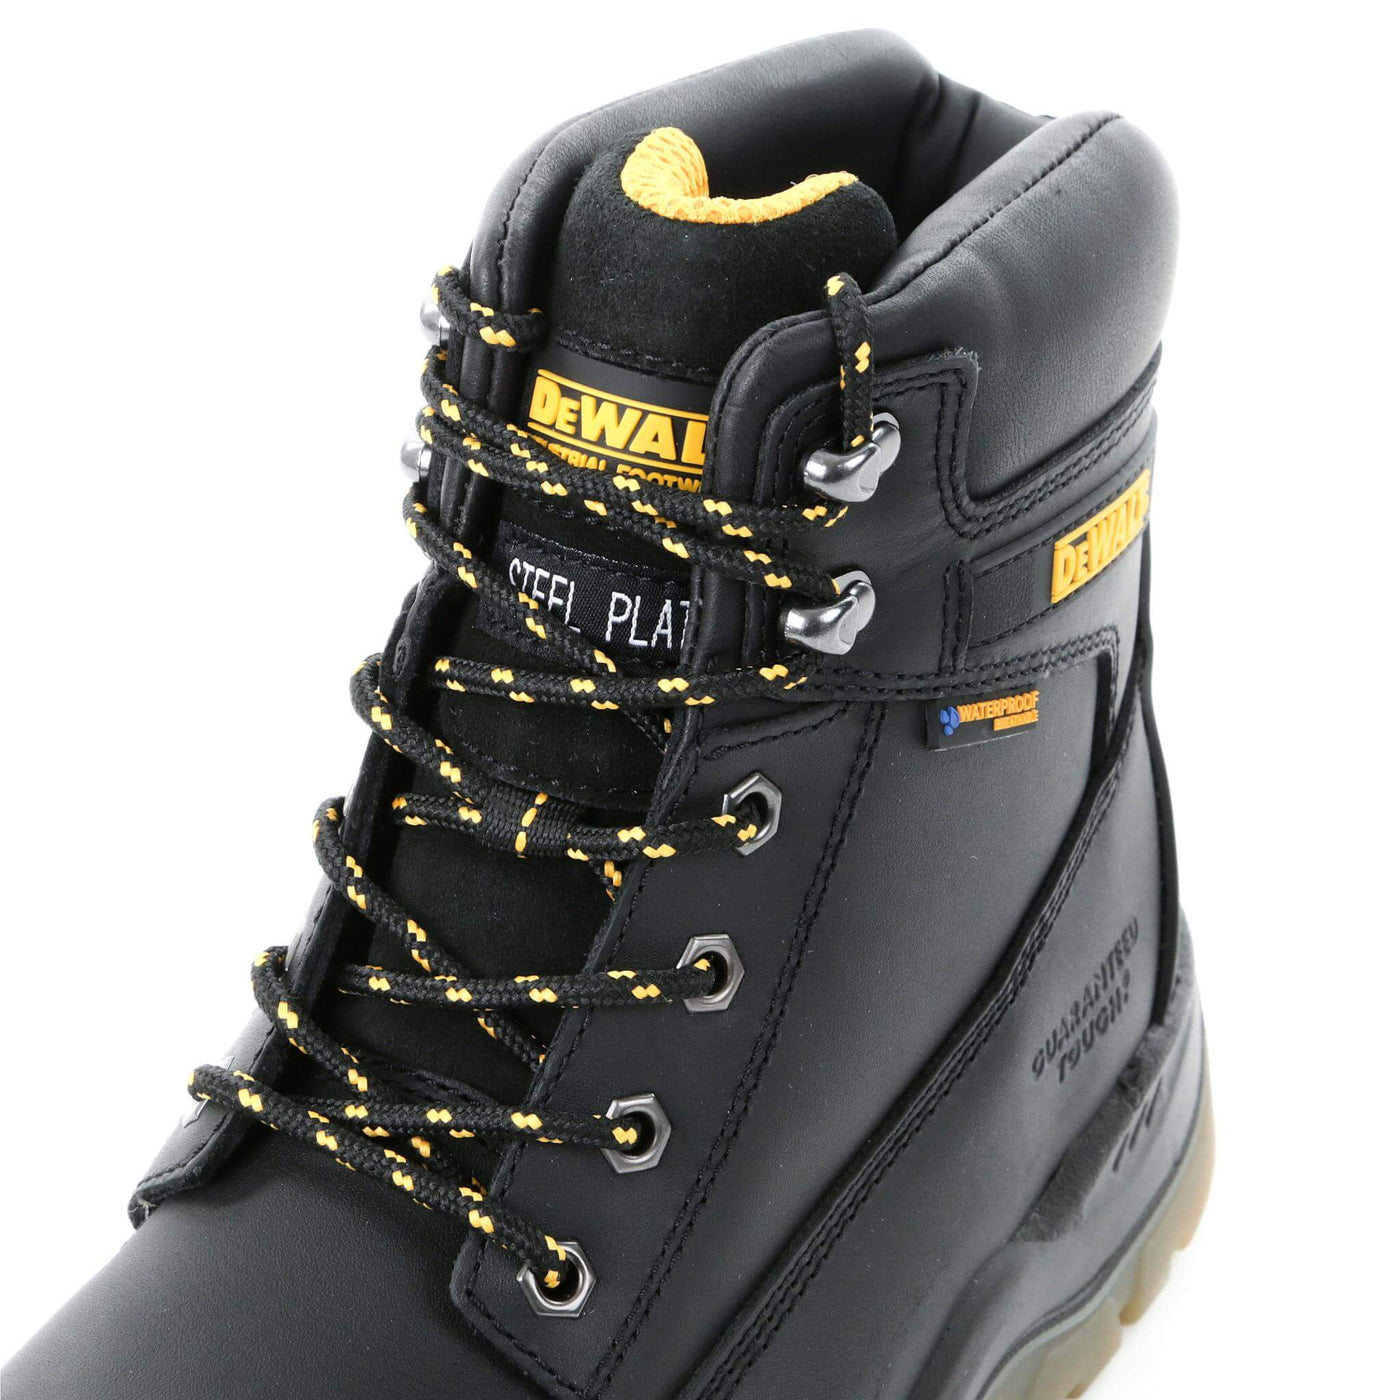 DeWalt Titanium Special Offer Pack - DeWalt Titanium Black 6 Inch Waterproof Safety Boots + 3 Pairs Work Socks